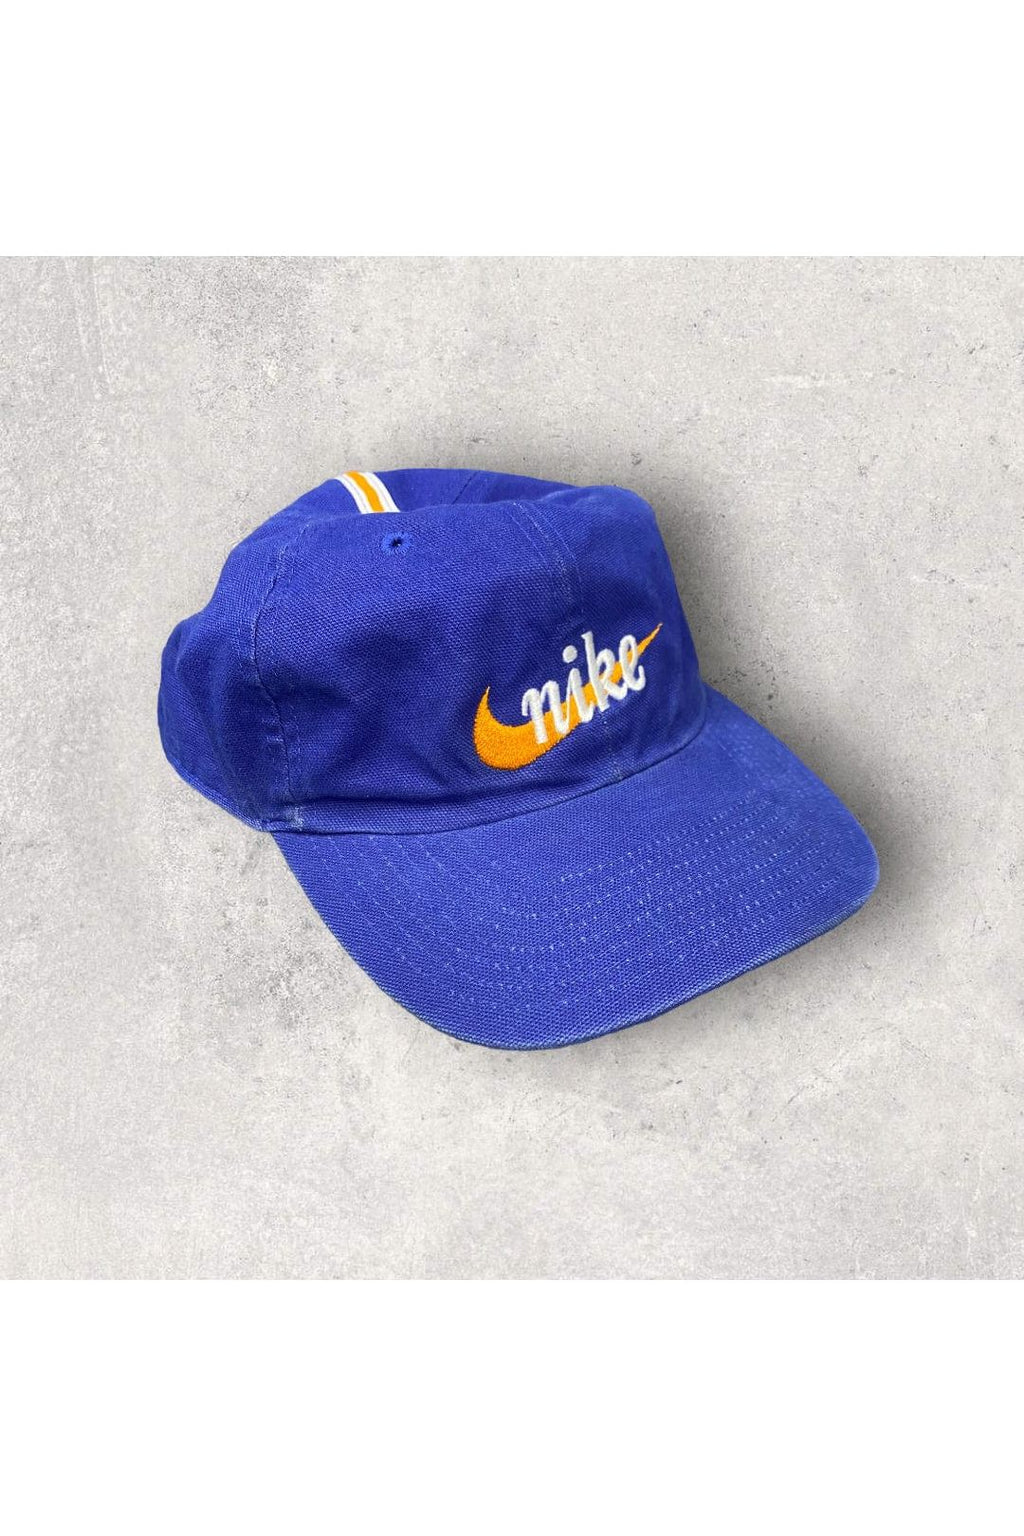 Vintage 90s Nike Strap Back Hat